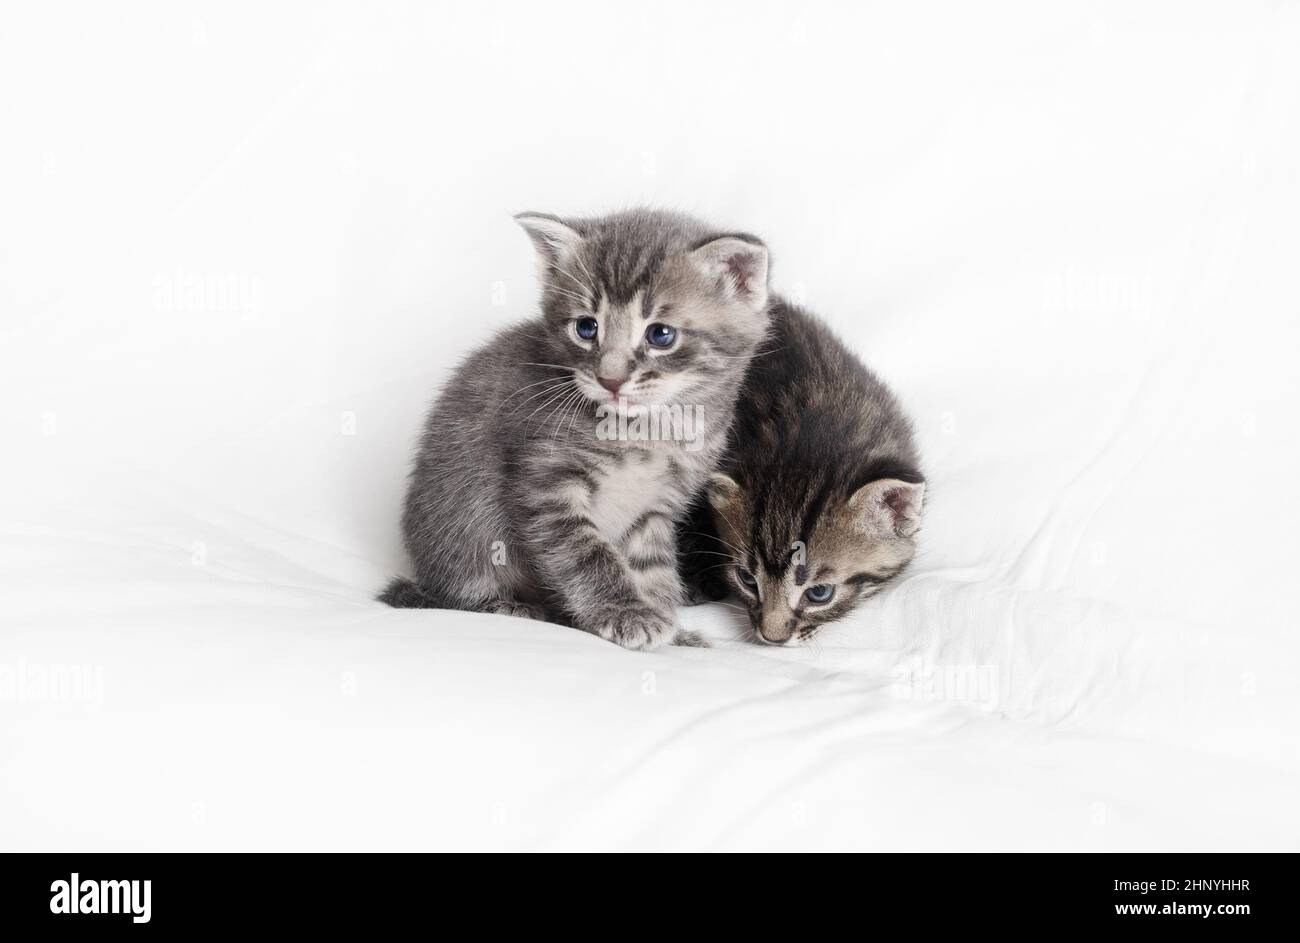 Gattini piccoli immagini e fotografie stock ad alta risoluzione - Alamy